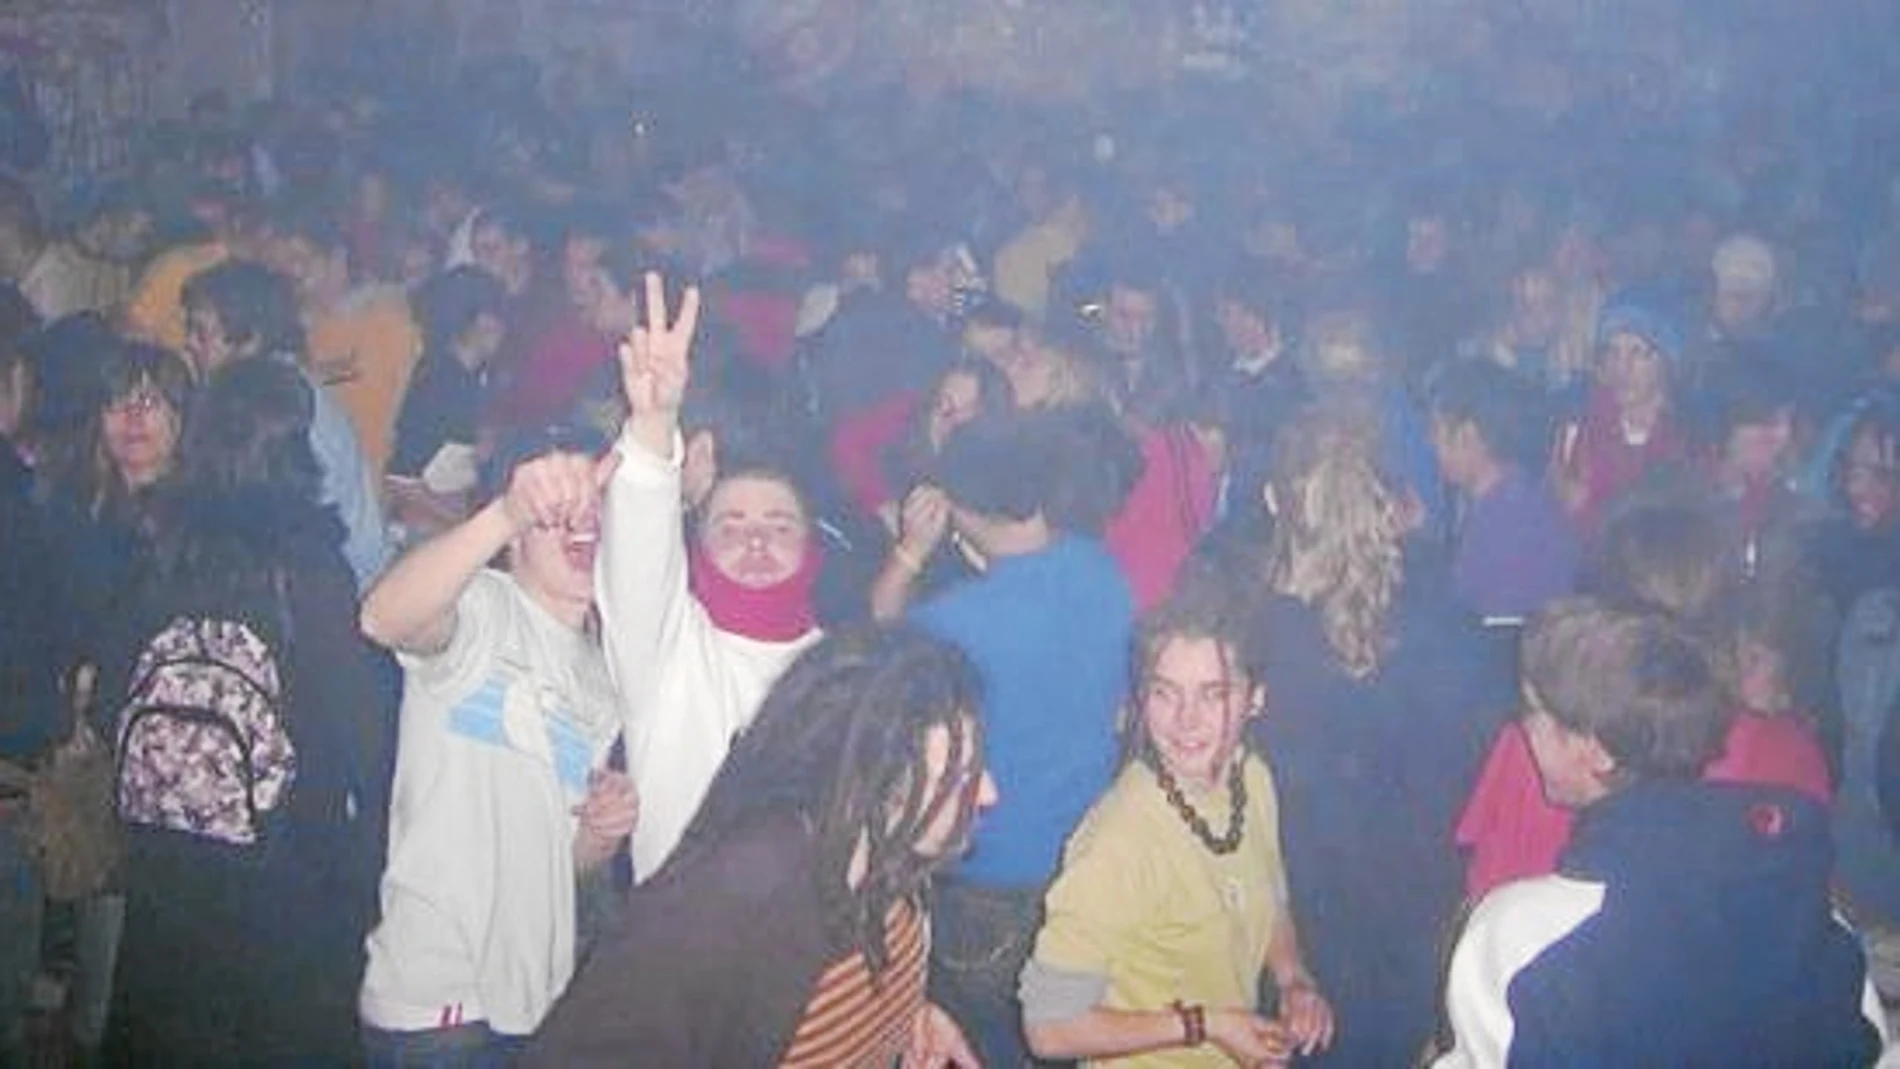 Desde hace diez años se celebran «raves» ilegales en el Monasterio de La Alduhela. Las drogas y el alcohol propician que terminen de forma dramática